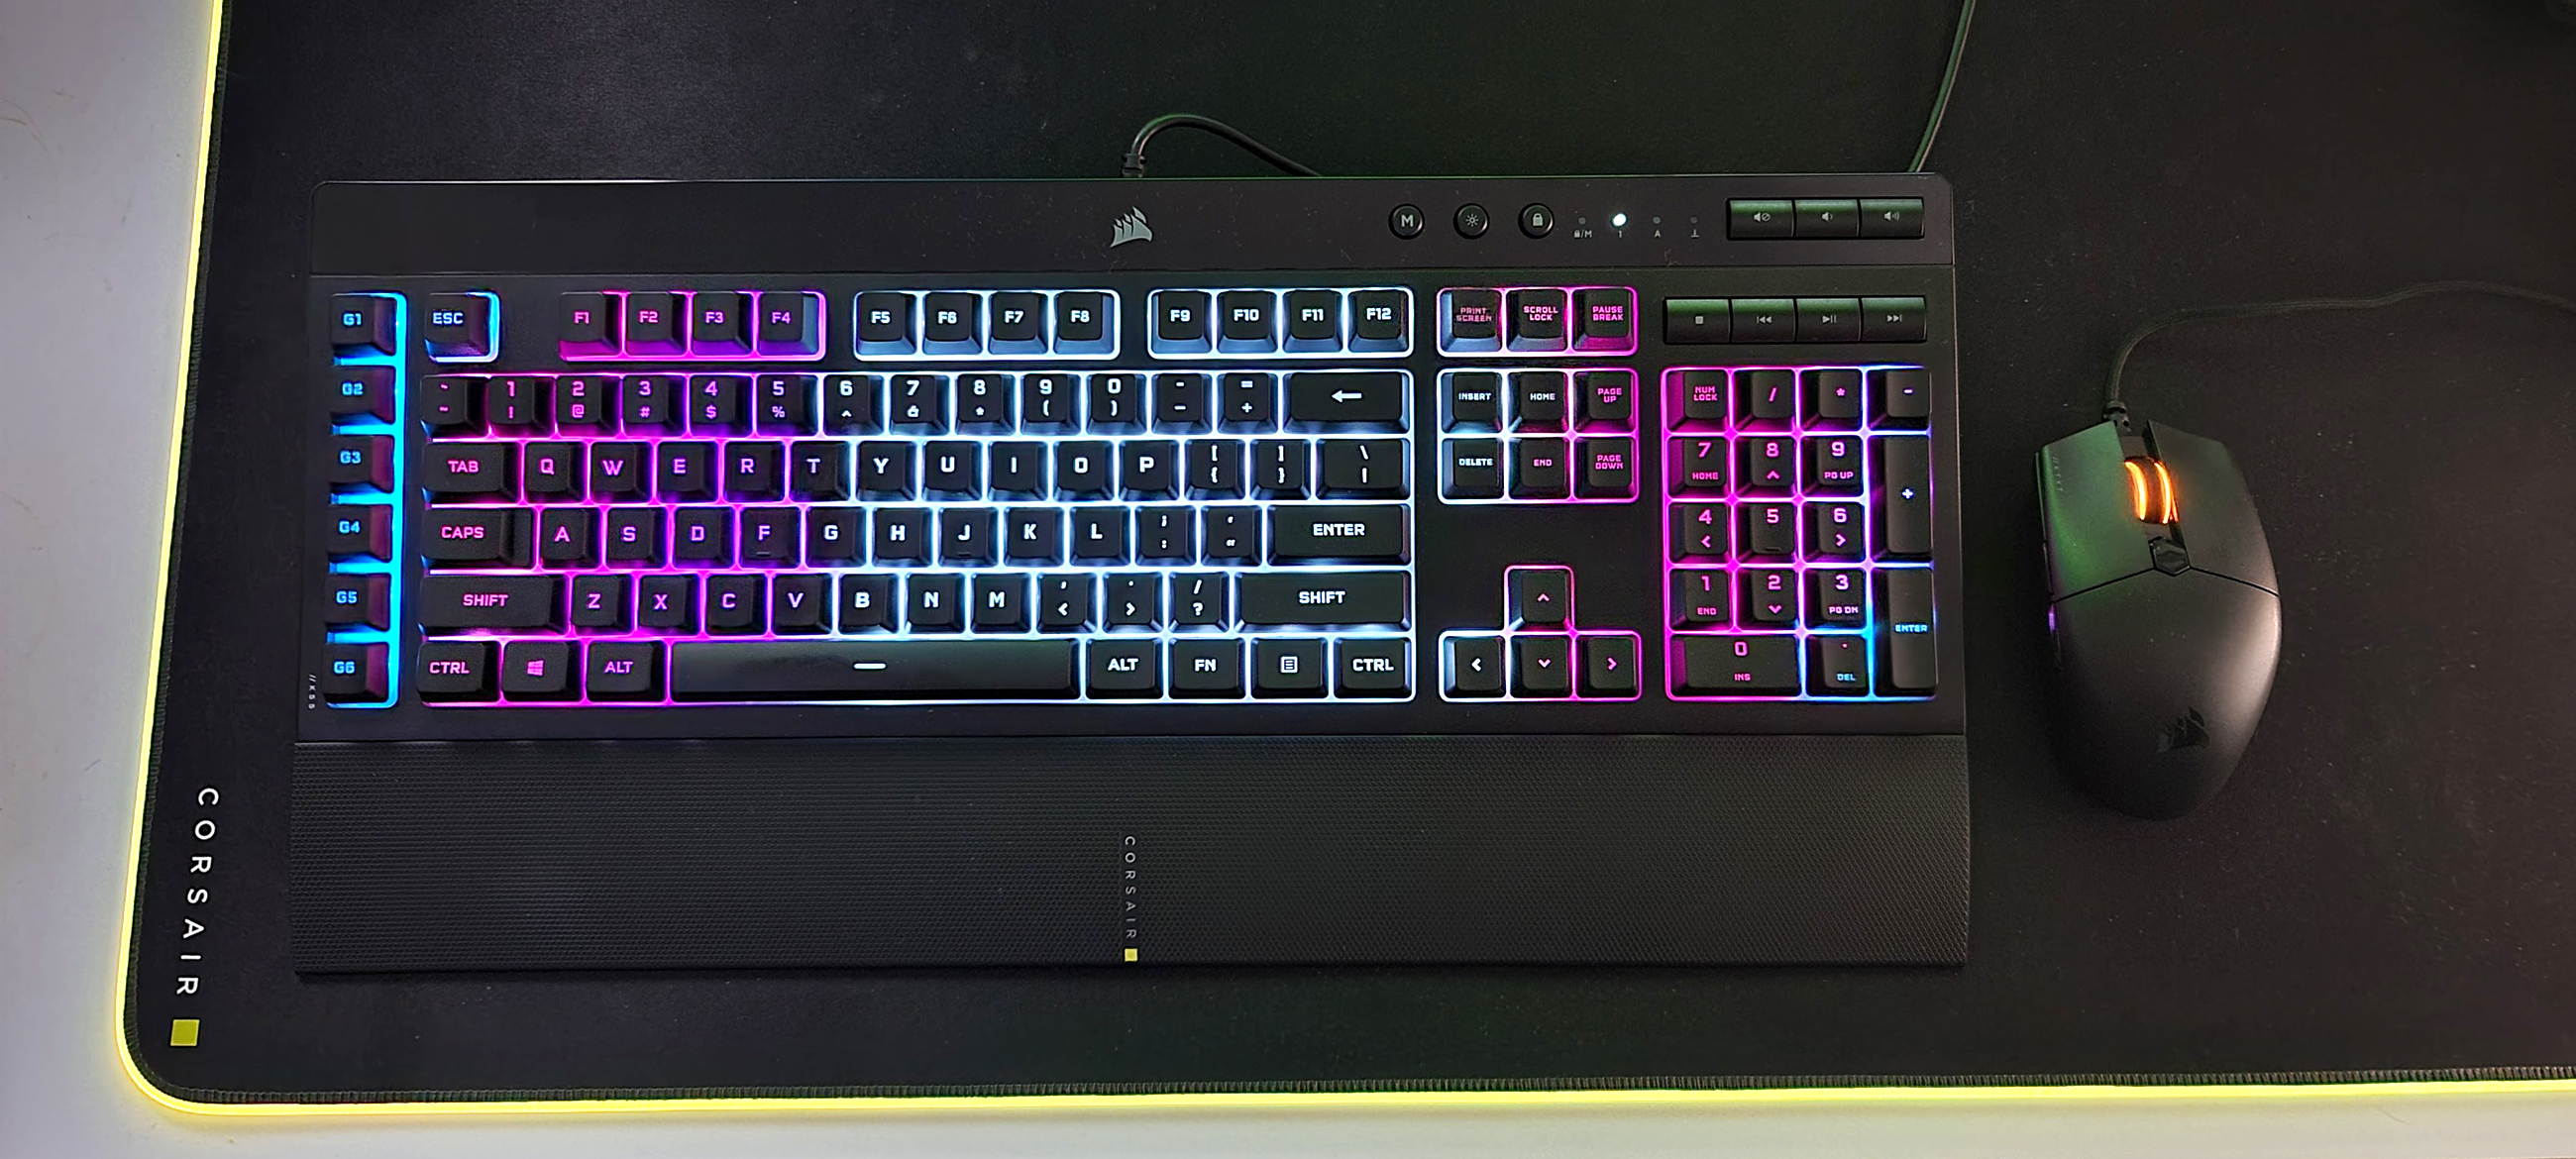 Corsair K55 Pro XT Keyboard review